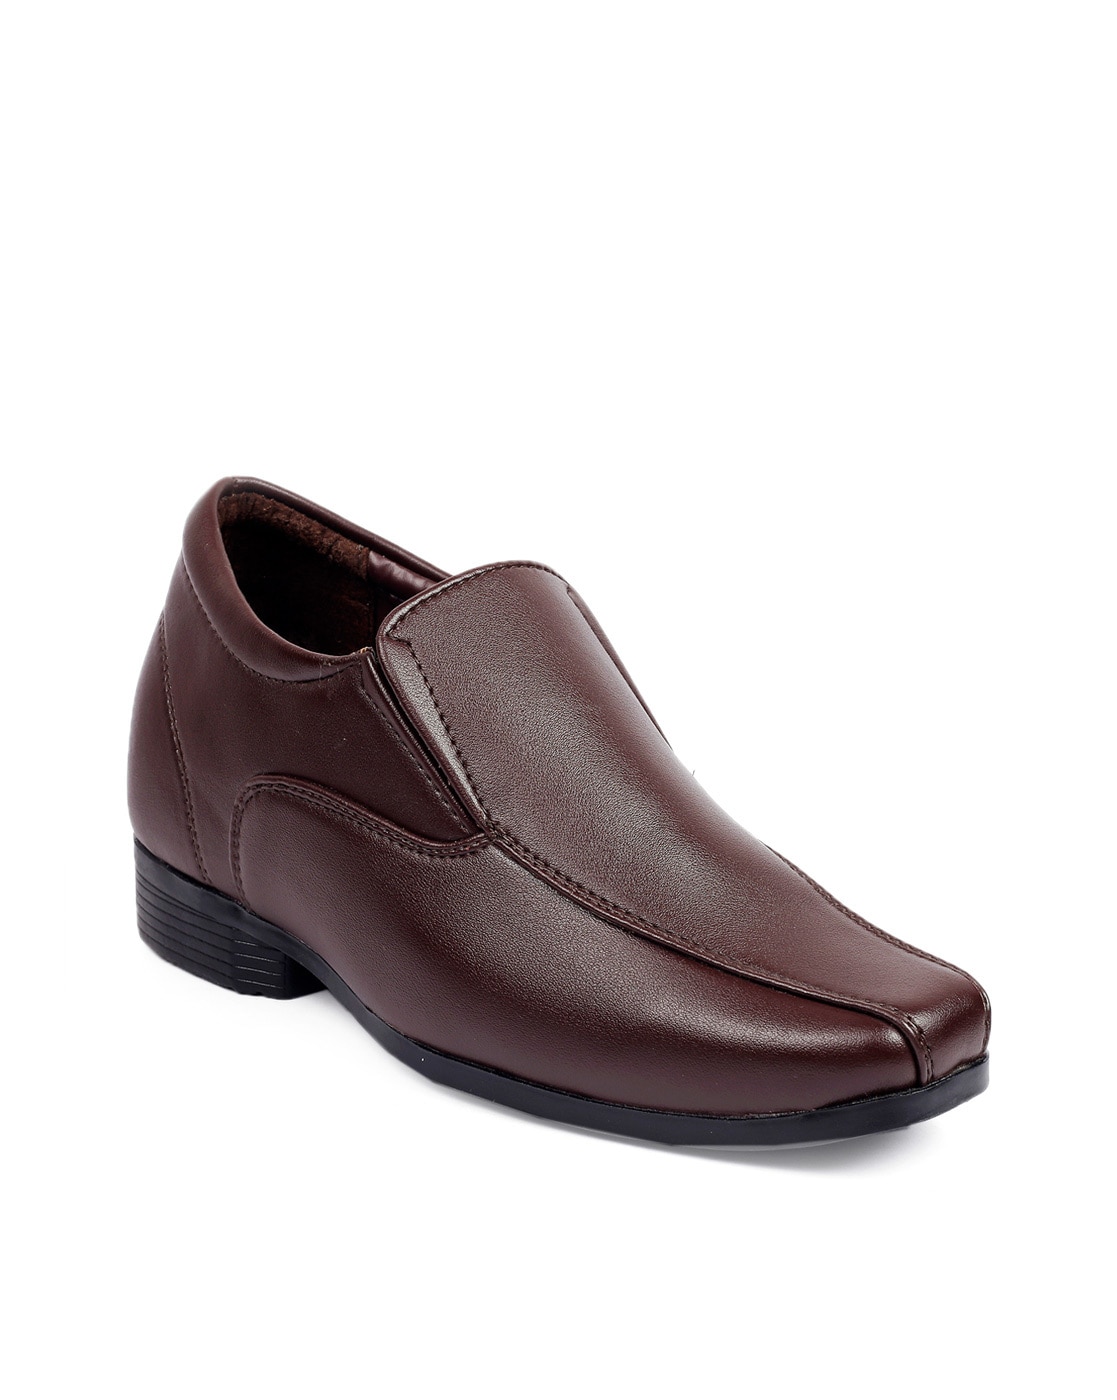 Mens Samsonite Brown Leather Shoes N 44 | eBay